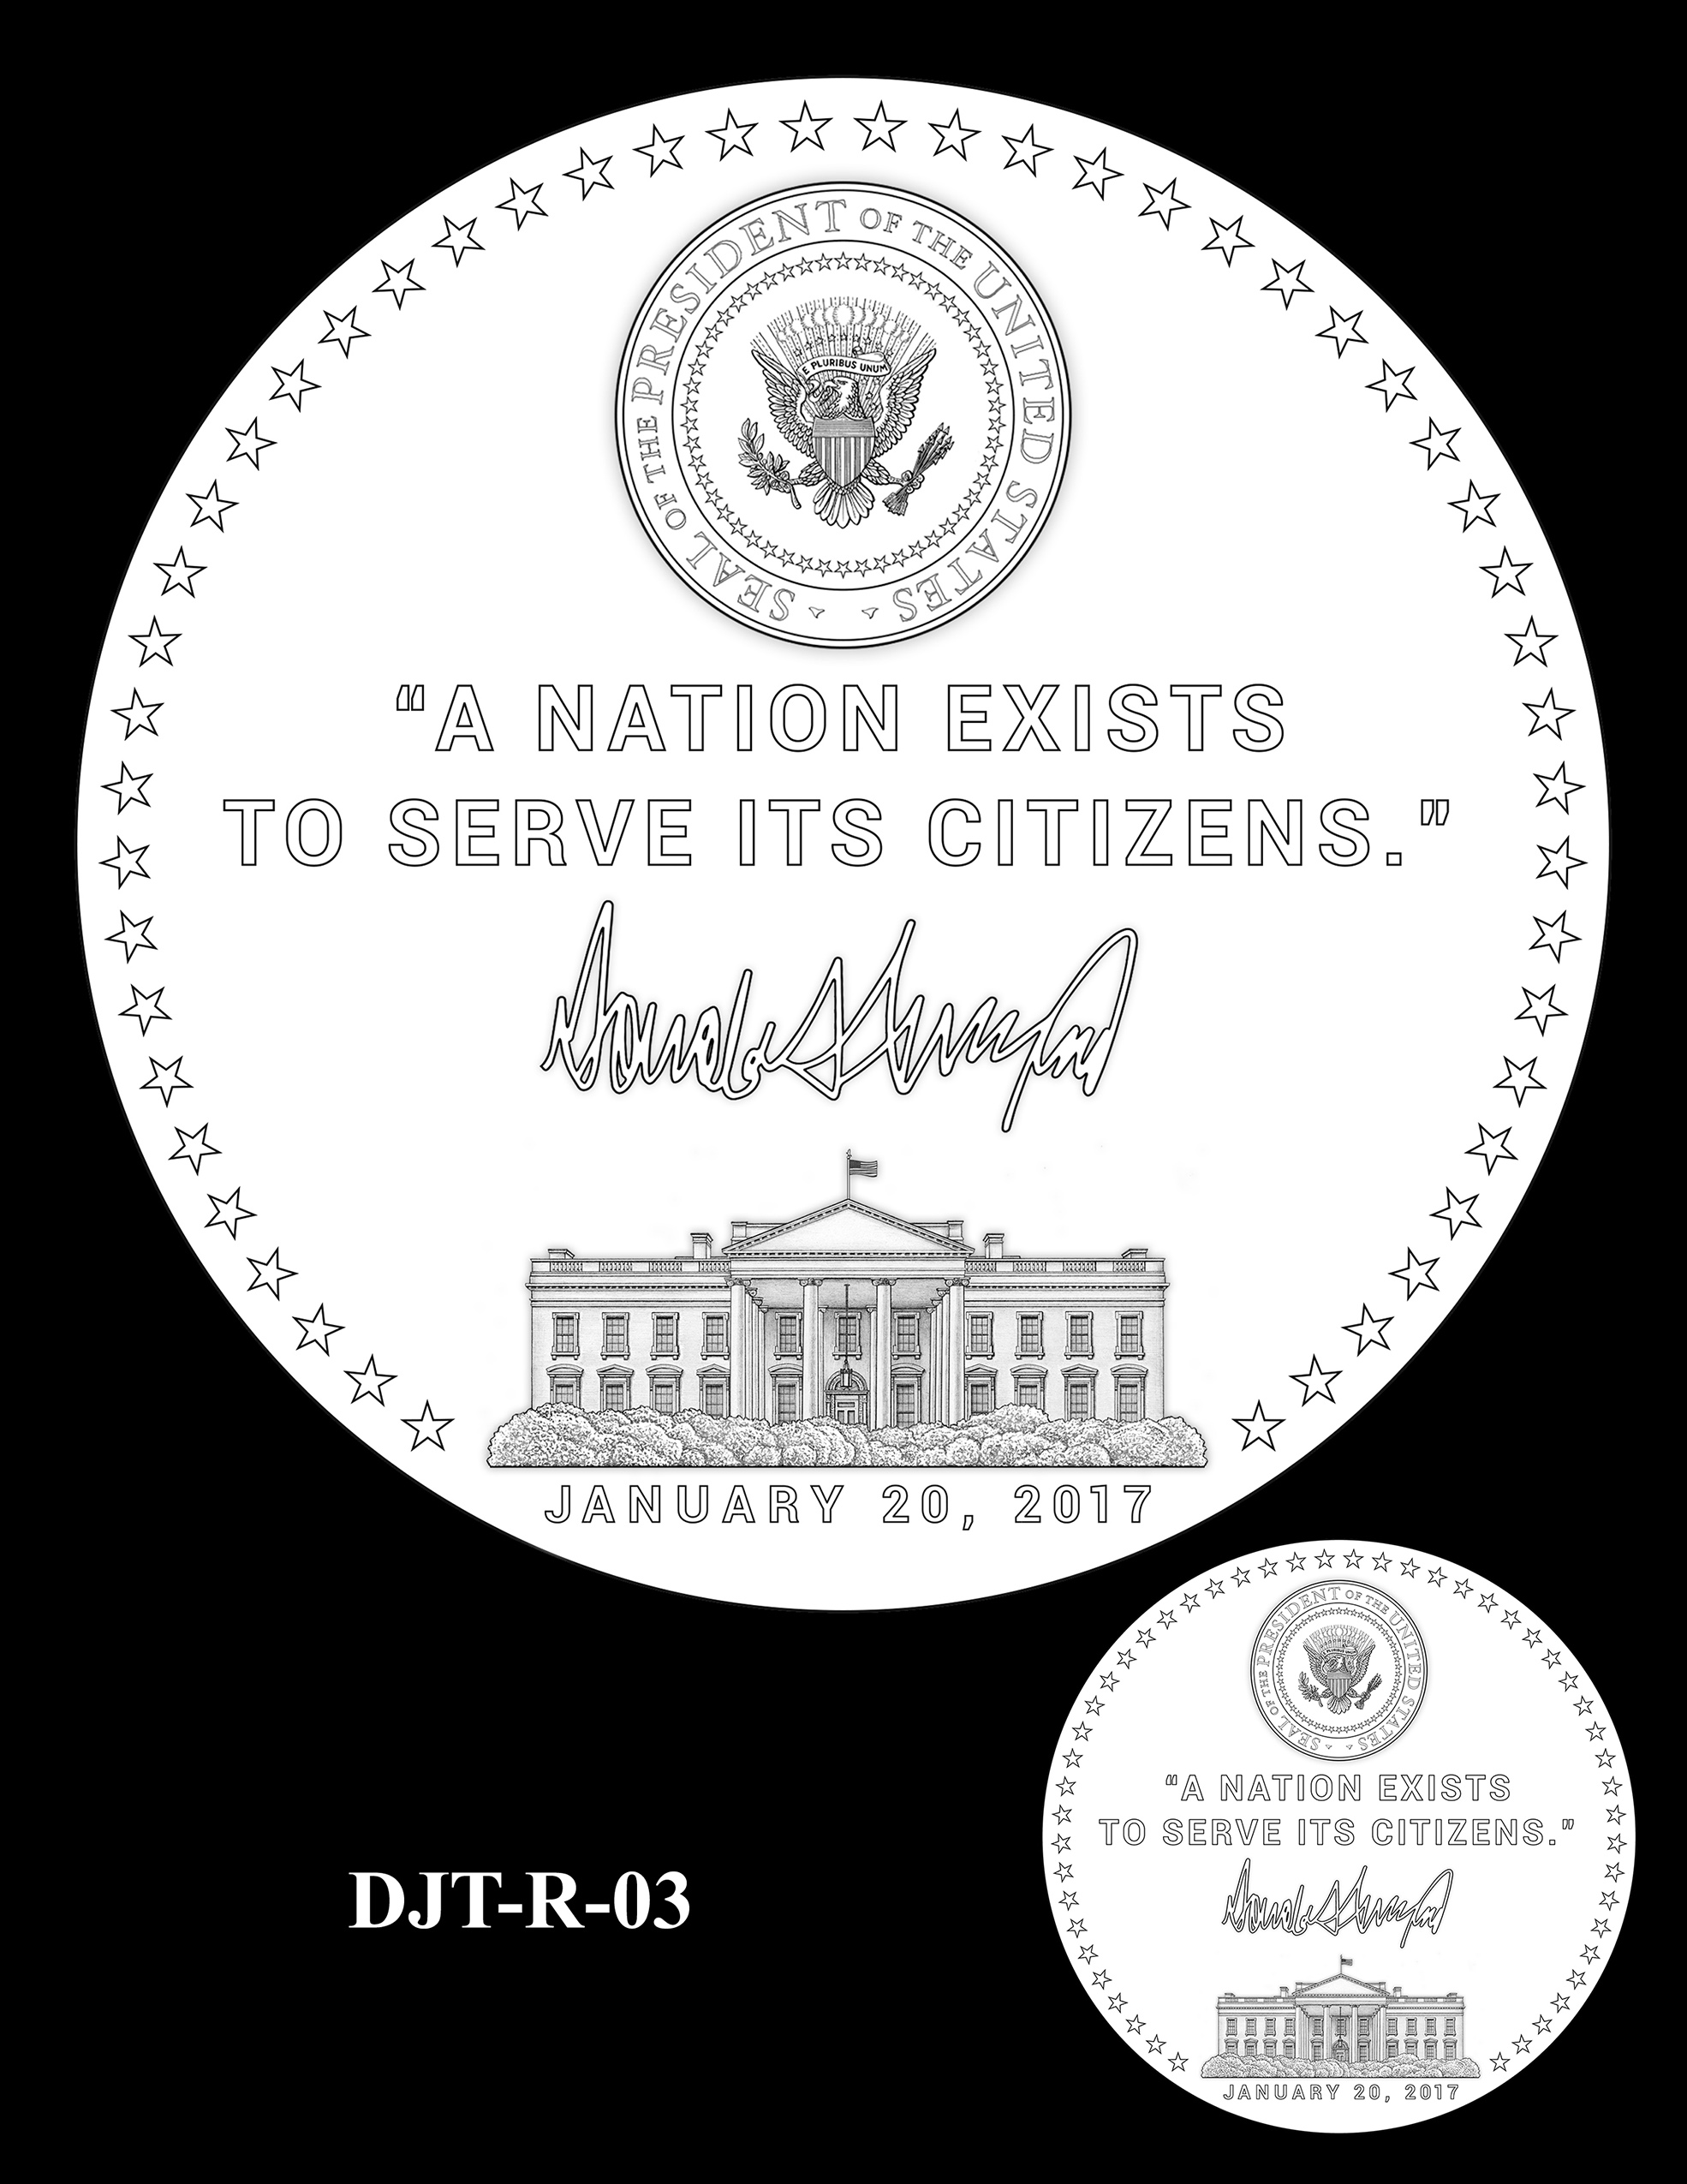 DJT-R-03 -- Donald J. Trump Presidential Medal